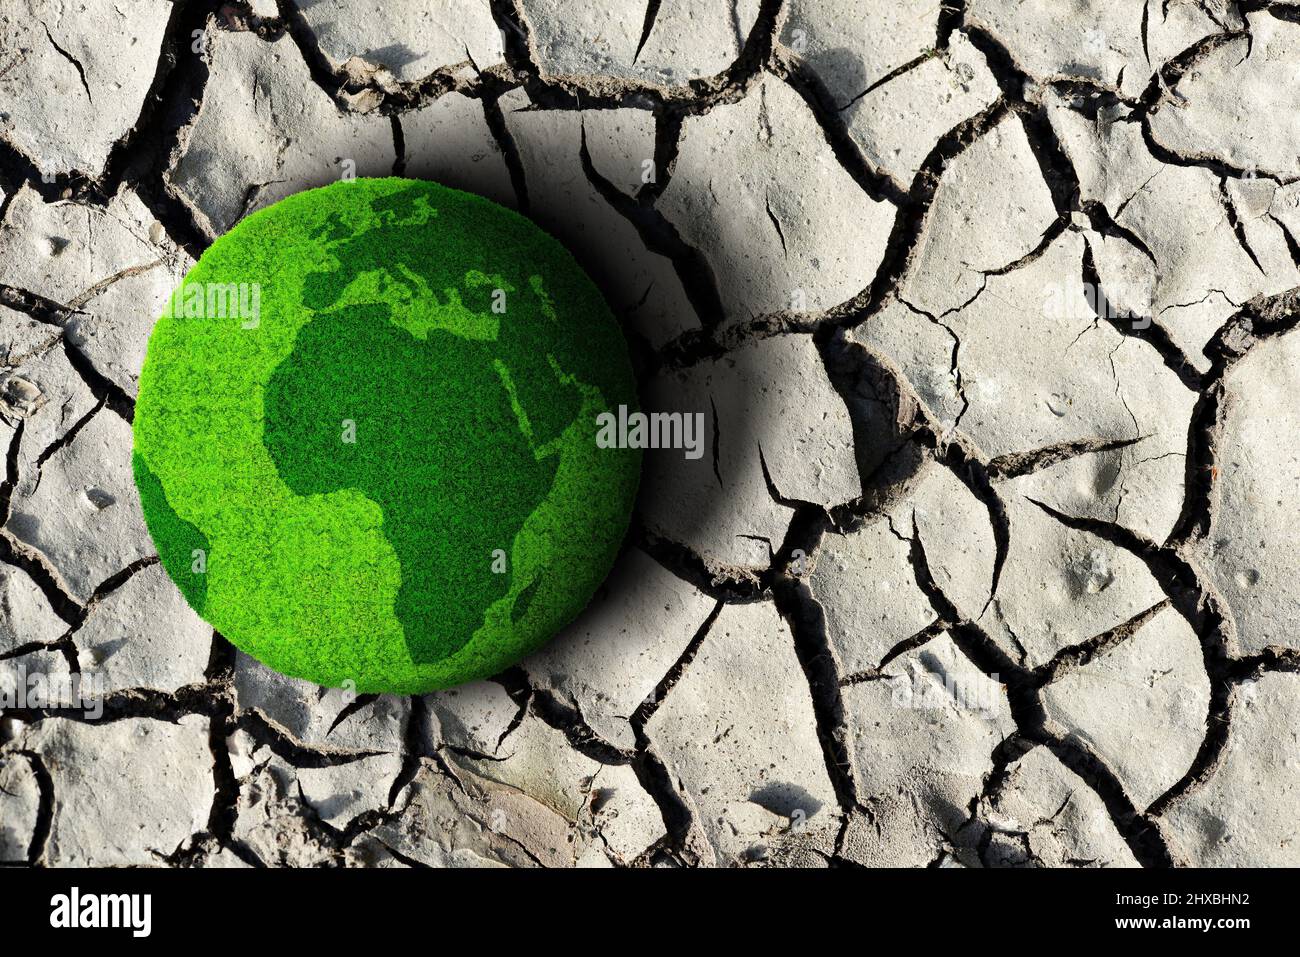 Pianeta verde sul suolo secco cracked. Concetto di cambiamento climatico o riscaldamento globale. Foto Stock